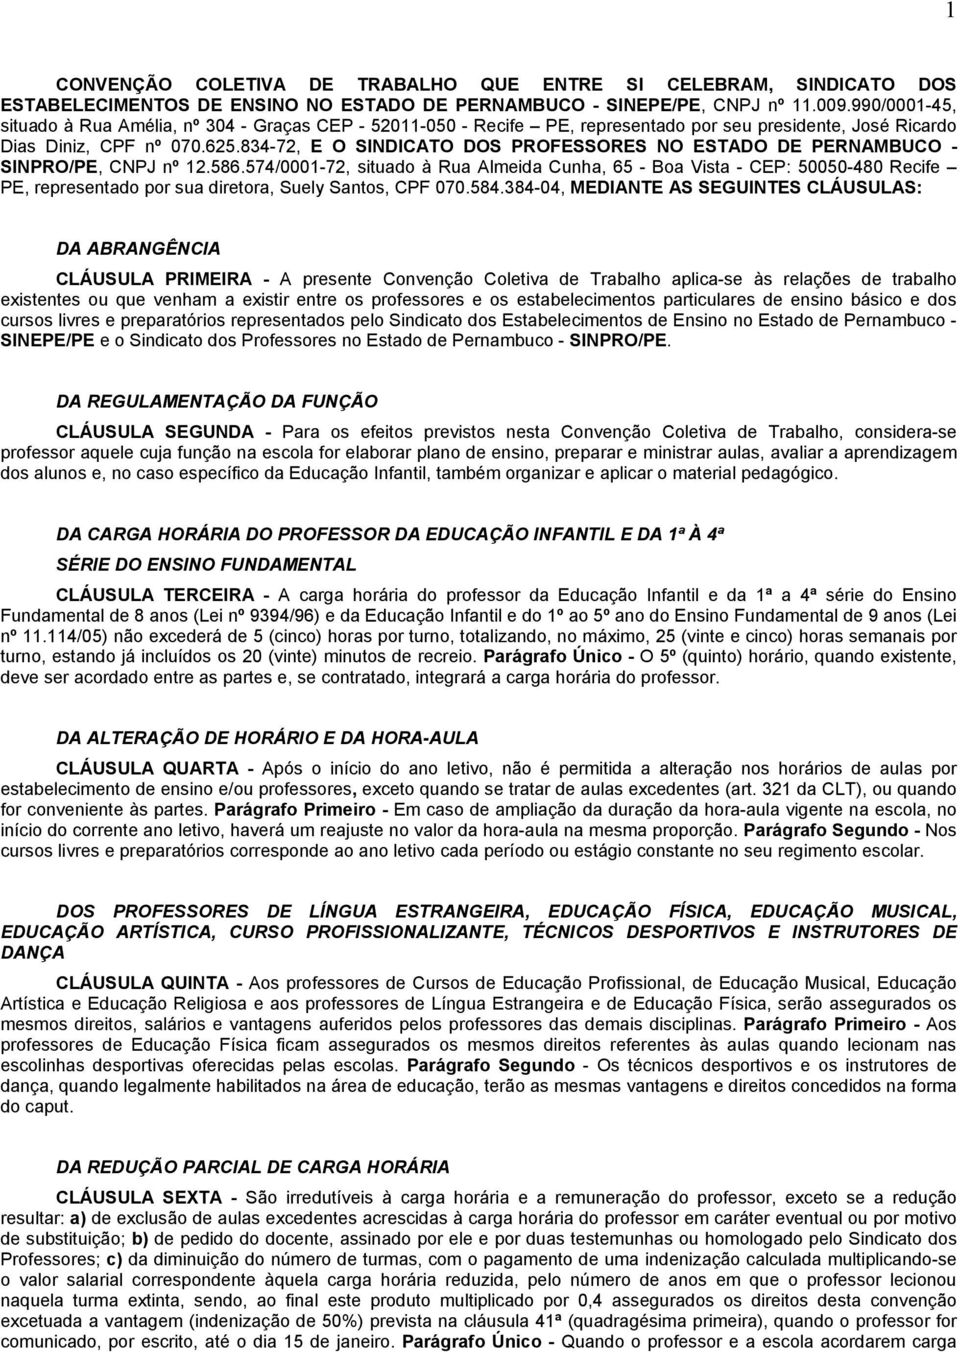 834-72, E O SINDICATO DOS PROFESSORES NO ESTADO DE PERNAMBUCO - SINPRO/PE, CNPJ nº 12.586.